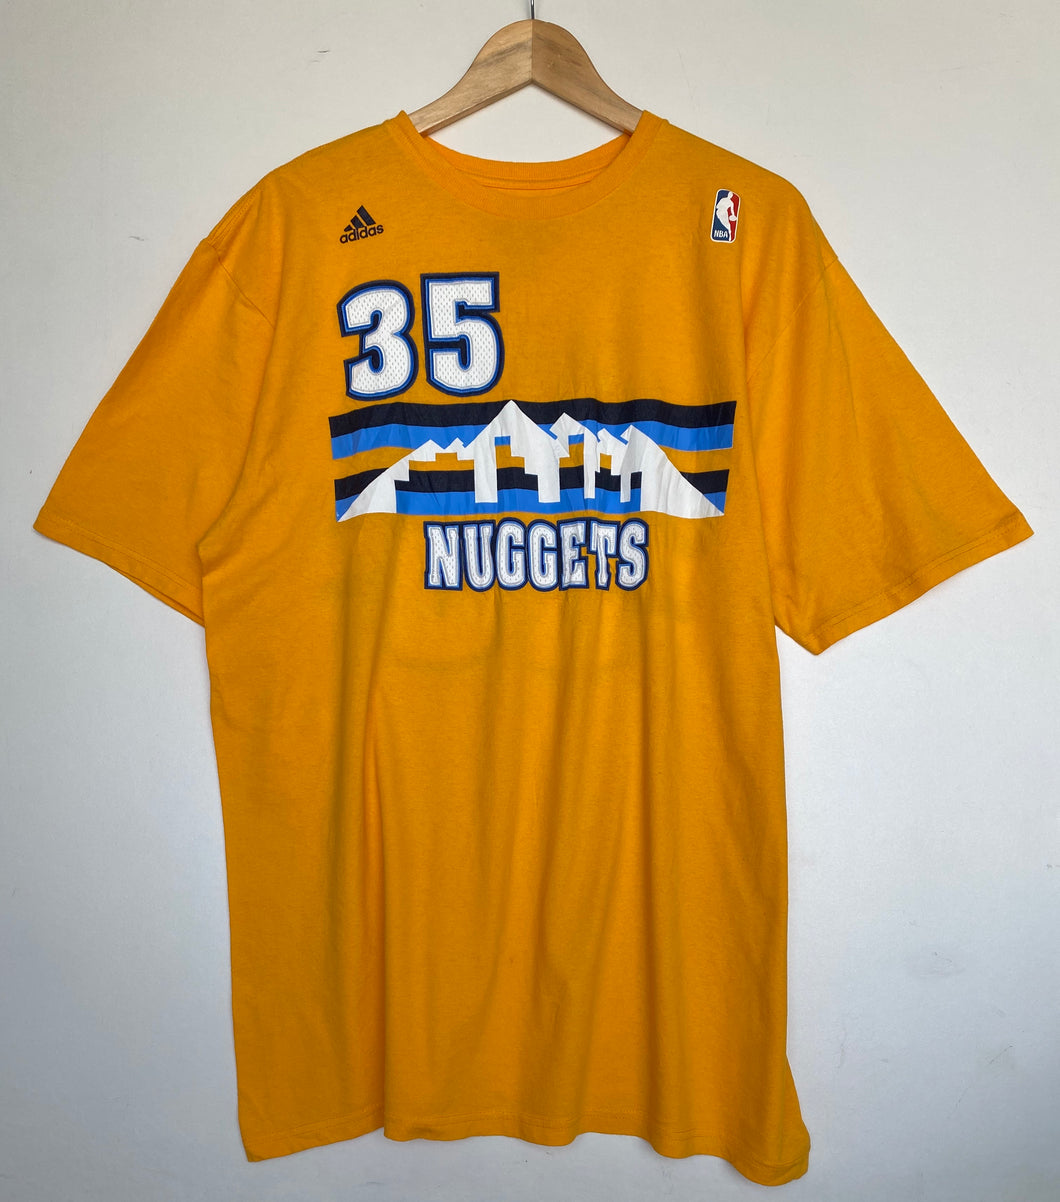 NBA Nuggets t-shirt (L)